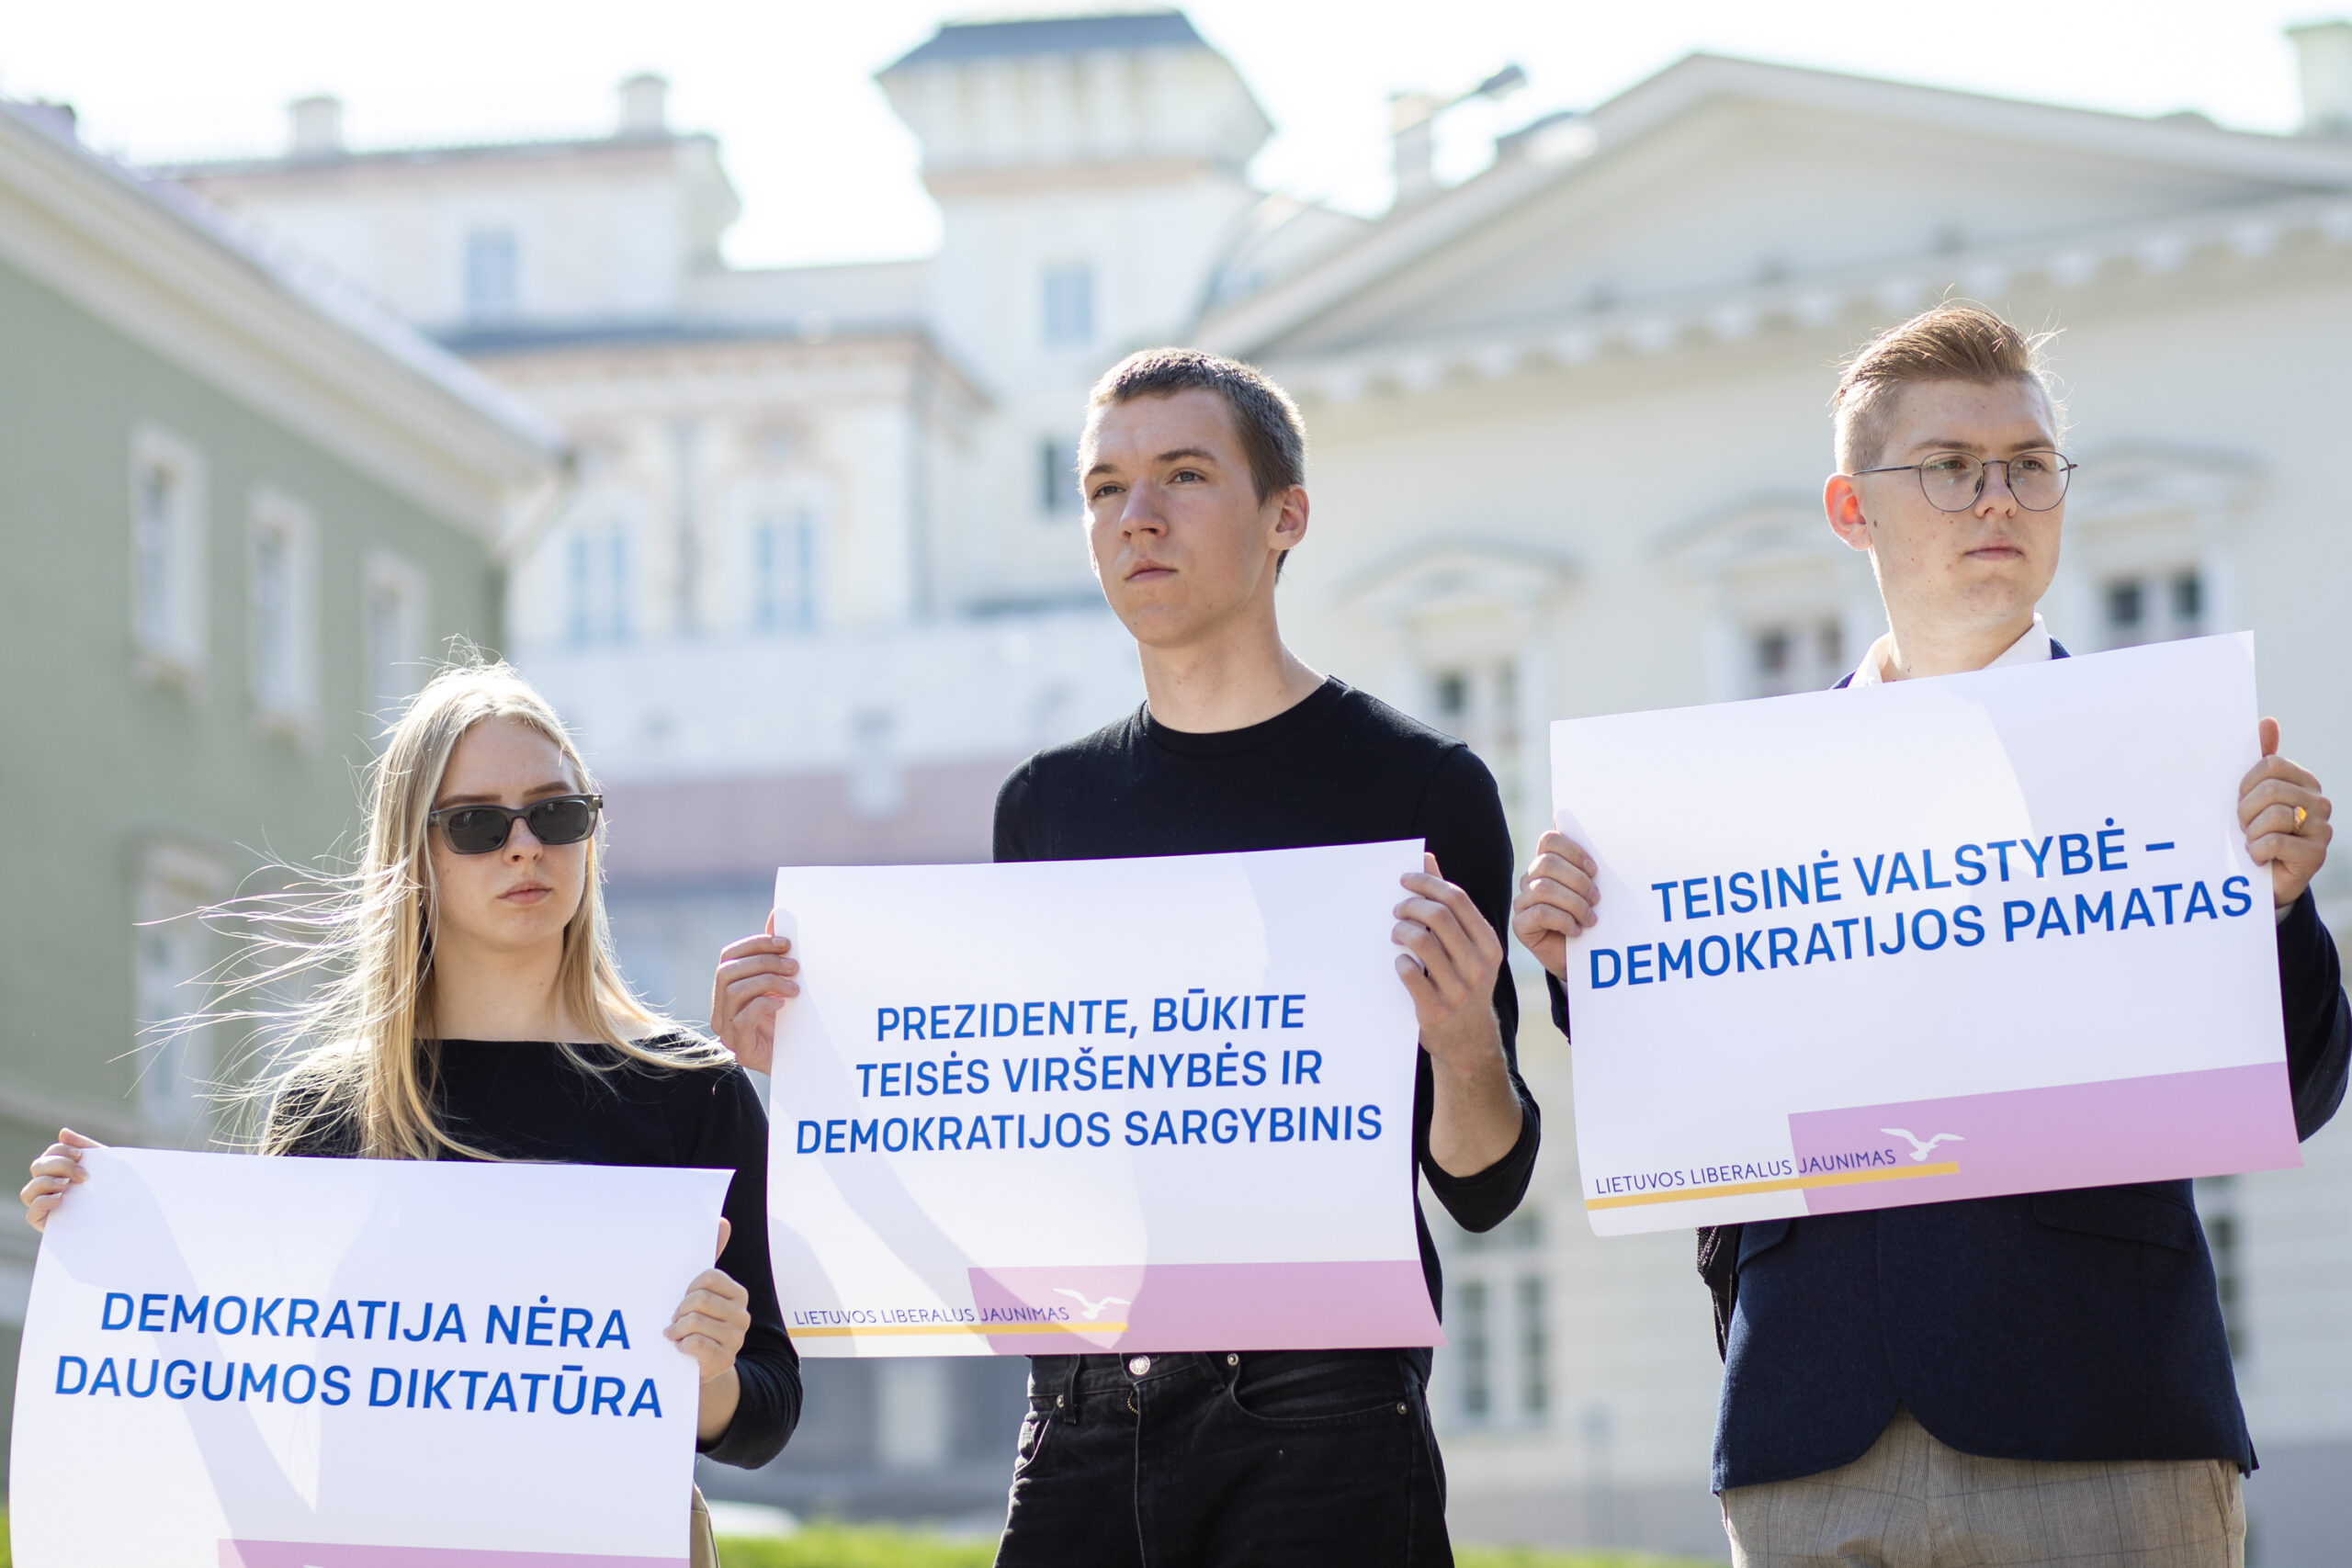 2021-09-09, Lietuvos liberalaus jaunimo palaikymo akcija teisės viršenybei ir demokratijai. 2021 m. Rugsėjo 09 d.